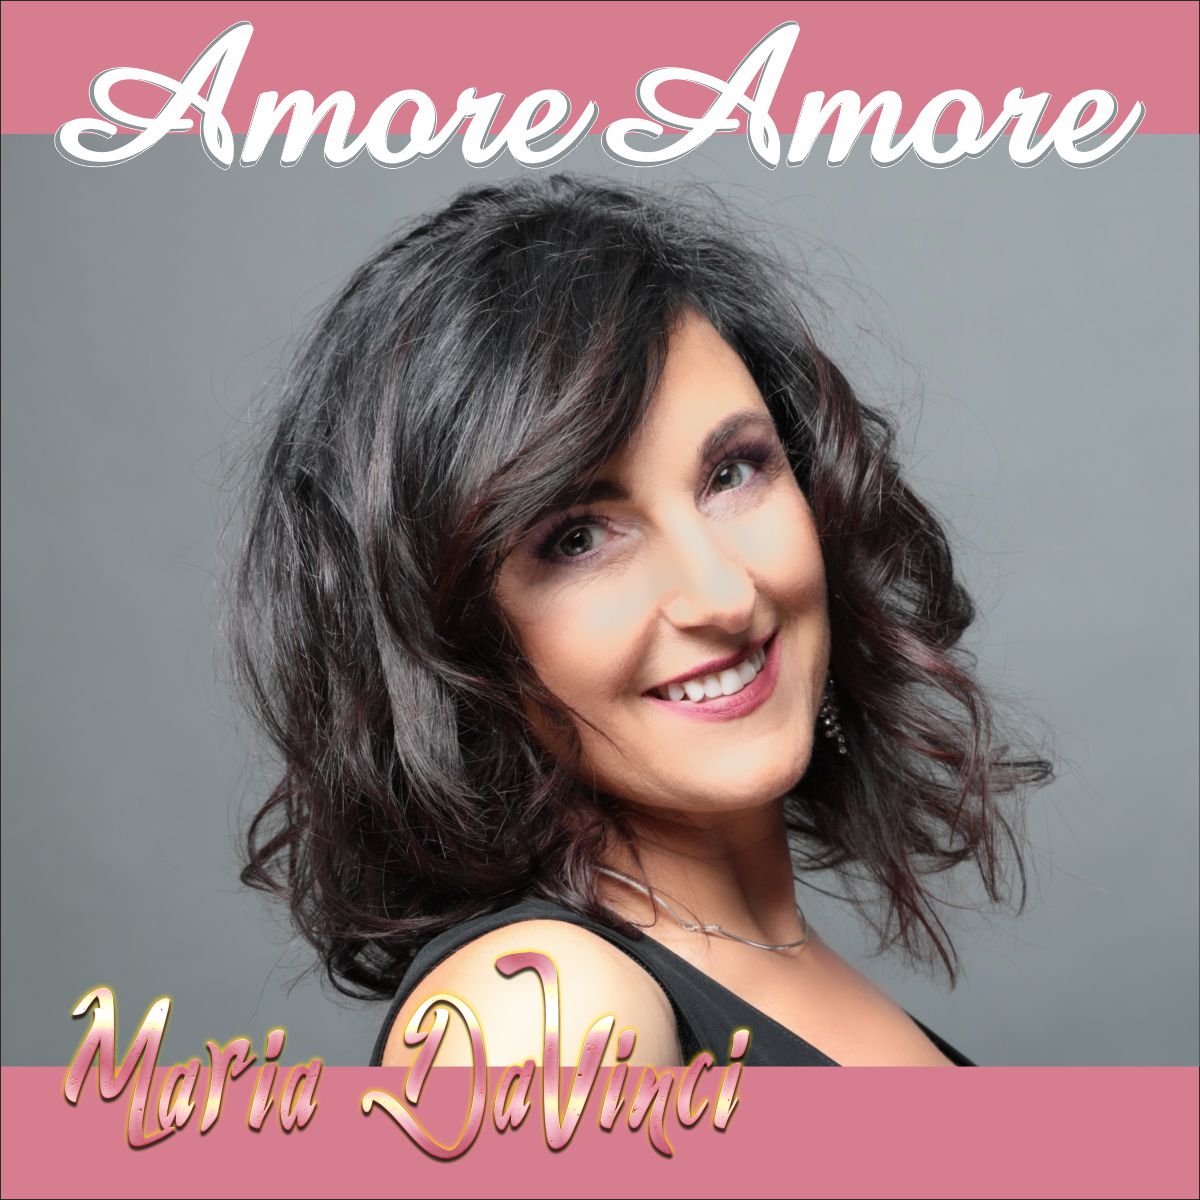 Maria da Vinci - Amore Amore - Froncover.jpg